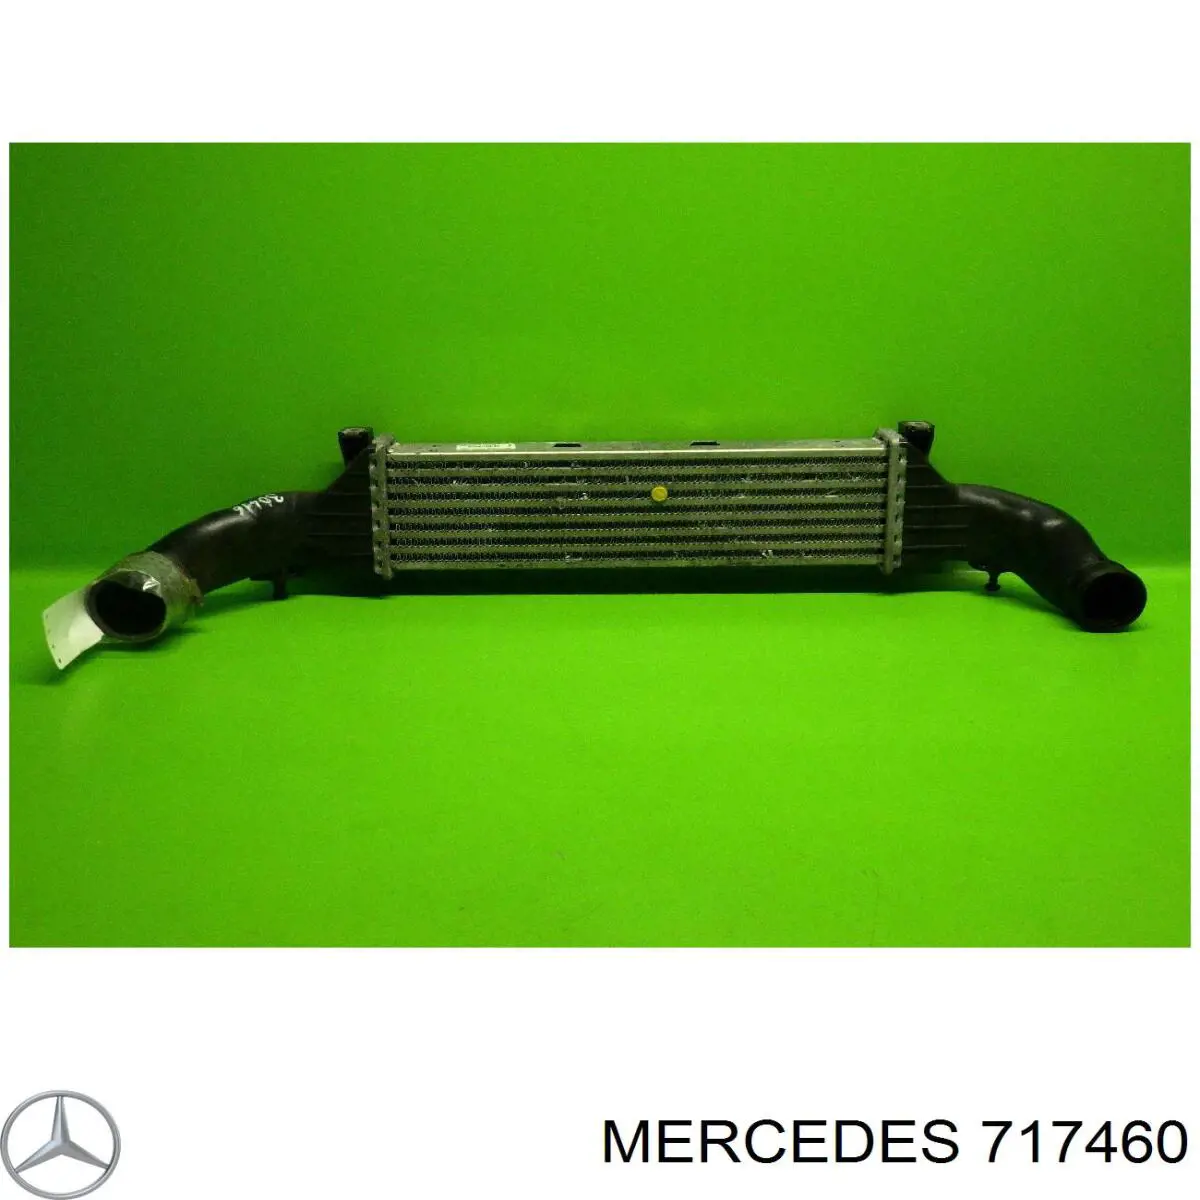 Caja de cambios mecánica, completa para Mercedes C (W202)